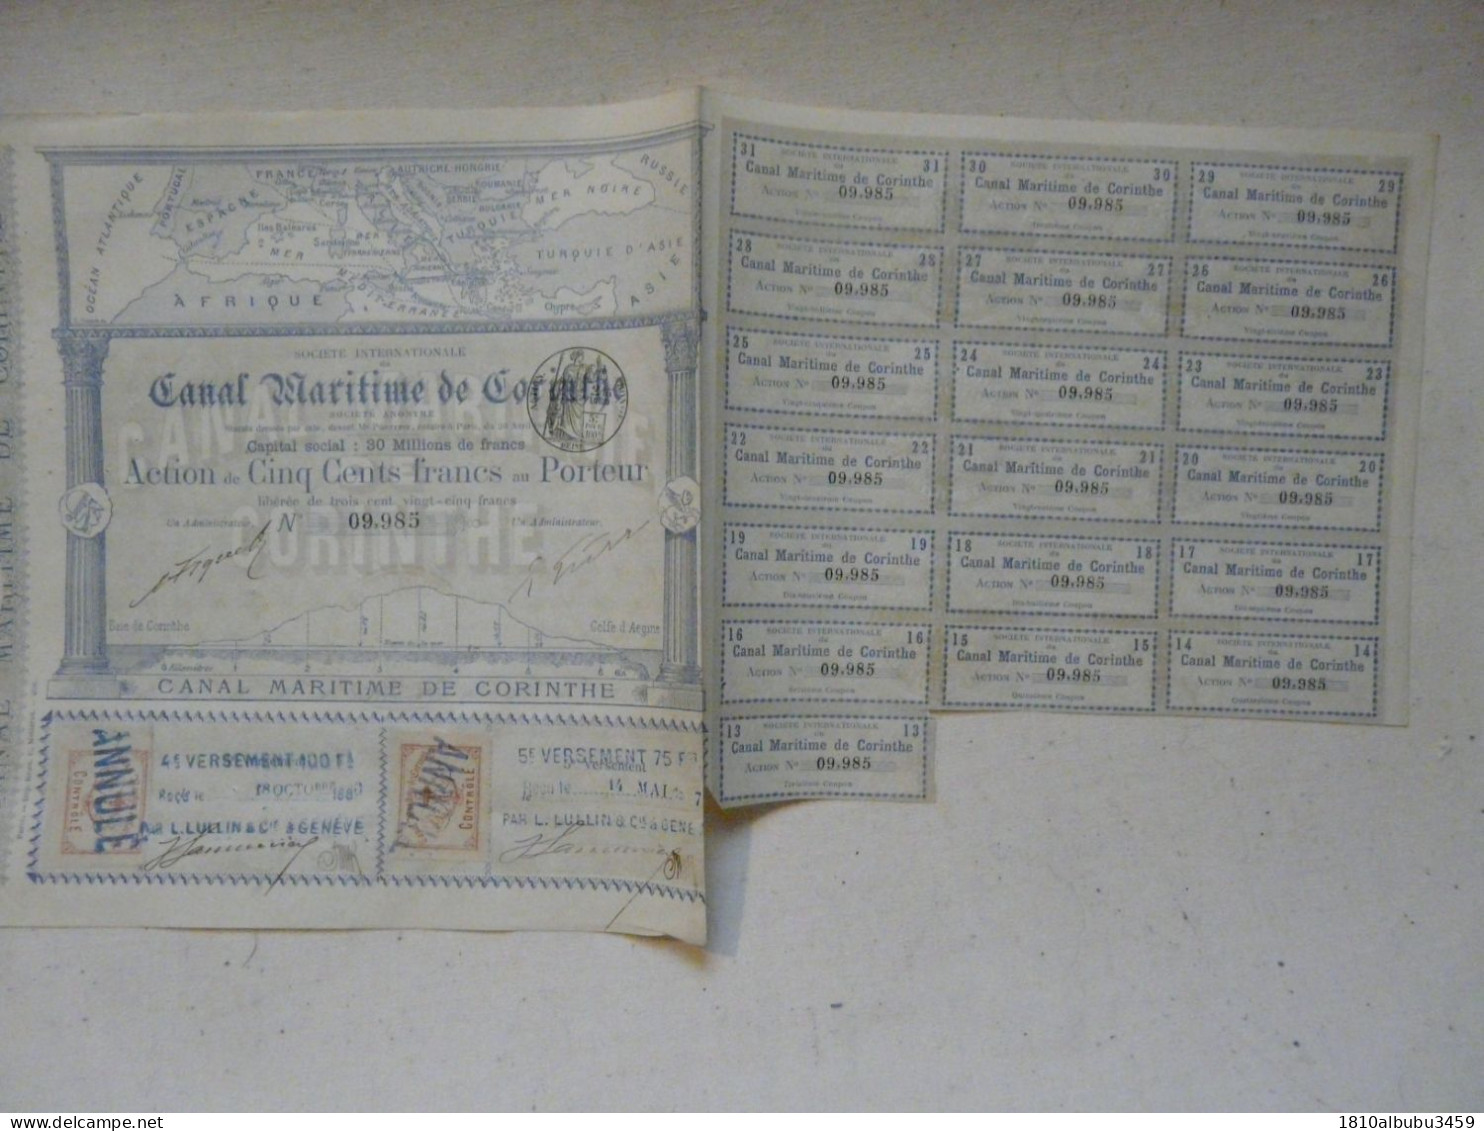 RARE - ACTION DE CINQ CENTS FRANCS - SOCIETE INTERNATIONALE DU CANAL MARITIME DE CORINTHE 1886-1887 - Navy